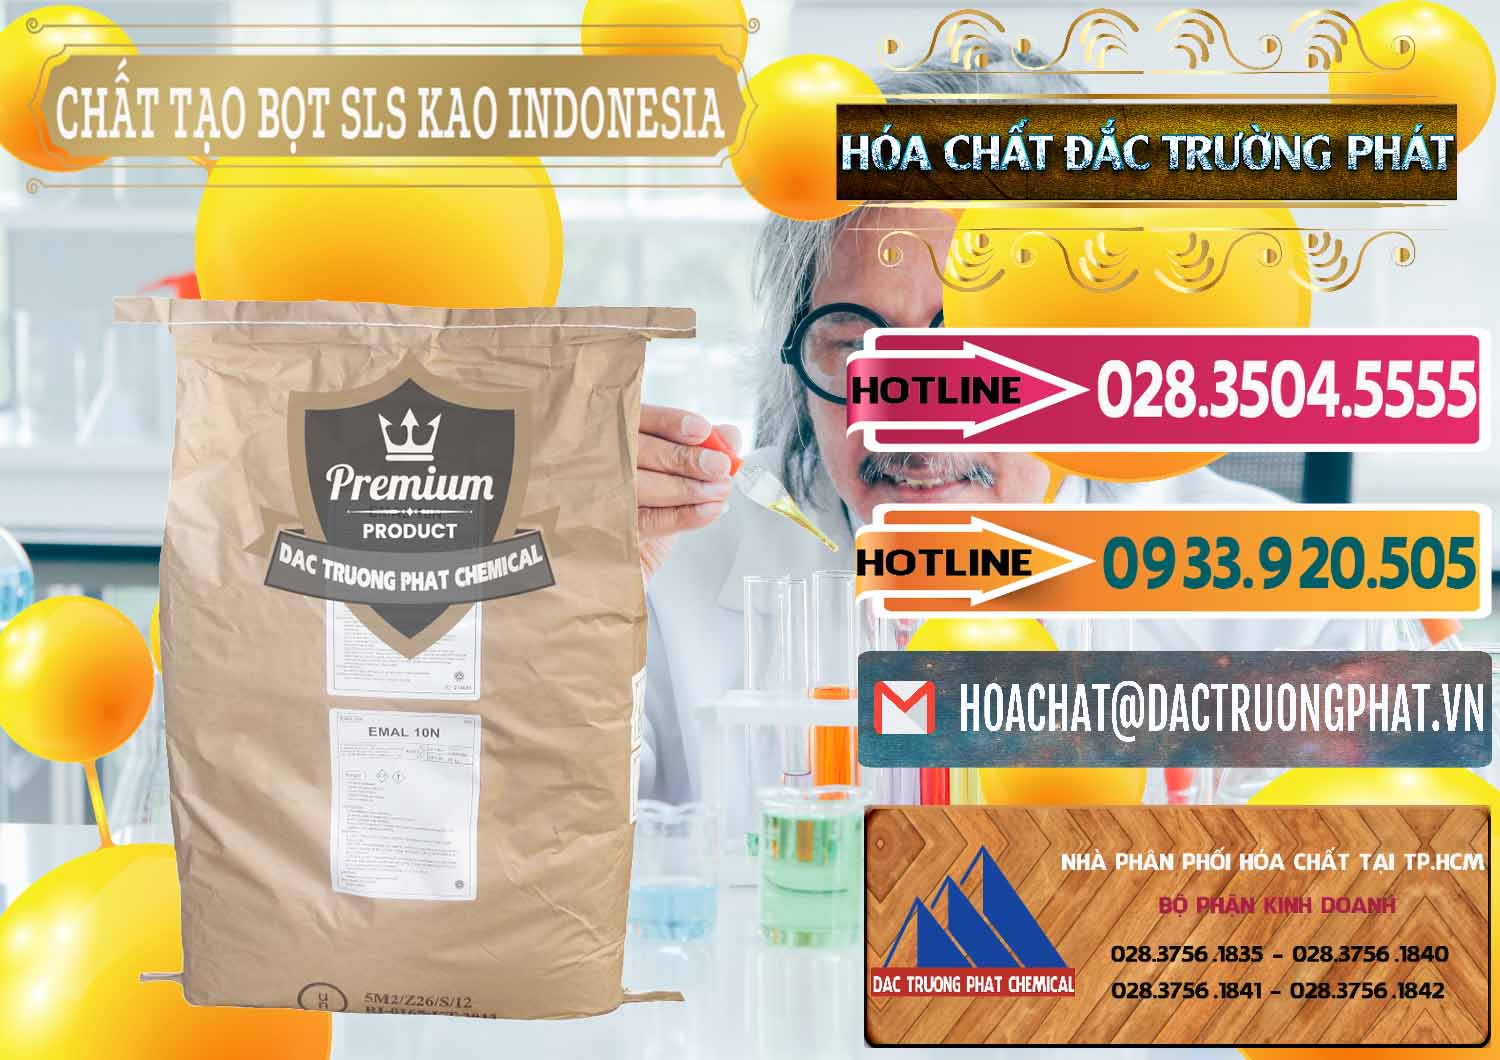 Nhà nhập khẩu - bán Chất Tạo Bọt SLS - Sodium Lauryl Sulfate EMAL 10N KAO Indonesia - 0047 - Cung cấp và kinh doanh hóa chất tại TP.HCM - dactruongphat.vn